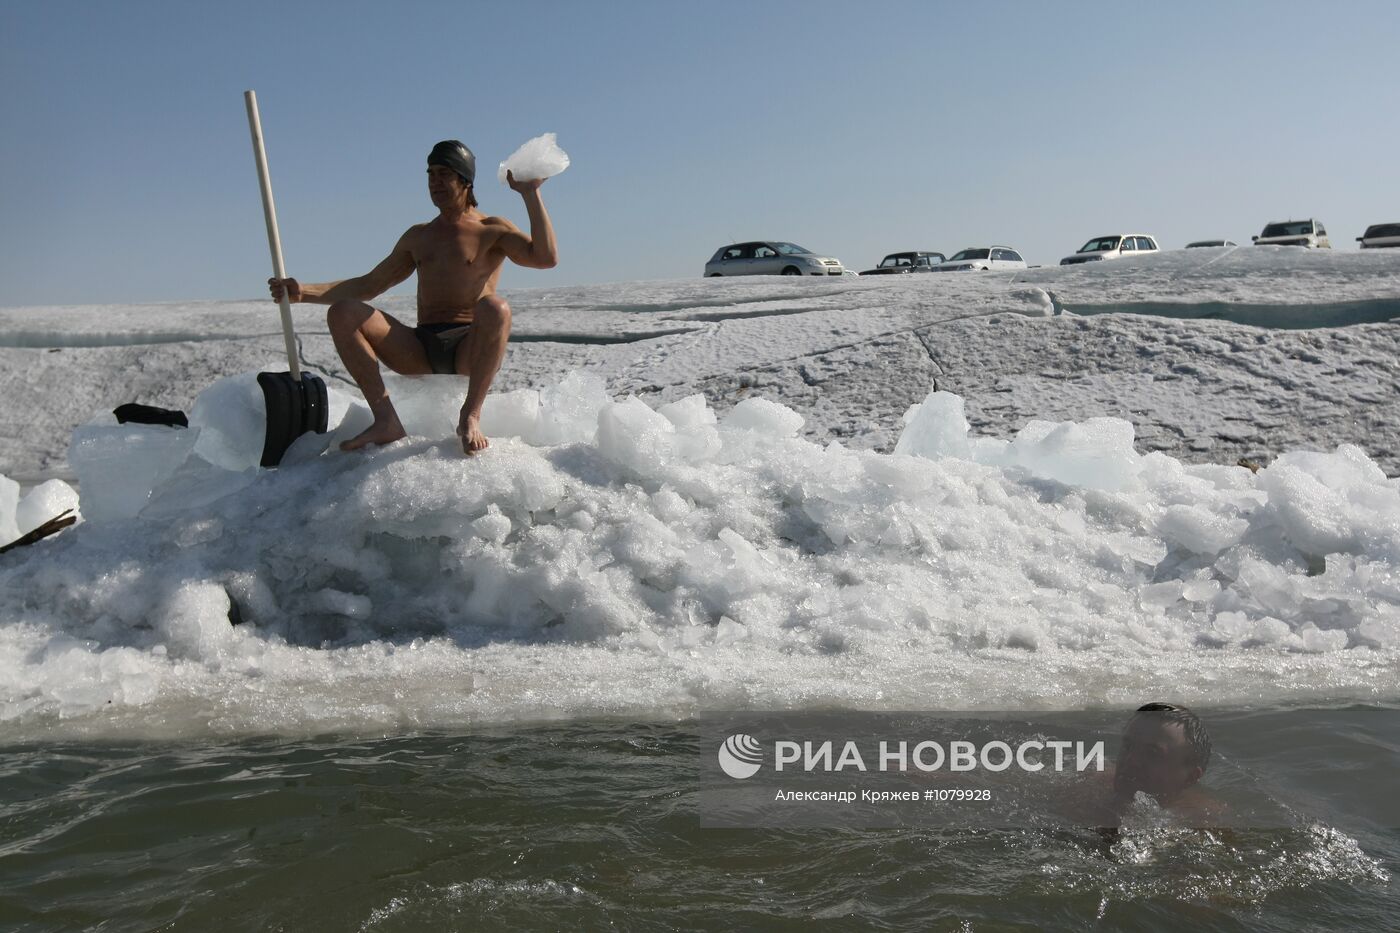 Соревнования по плаванию в ледяной воде в Бердском заливе